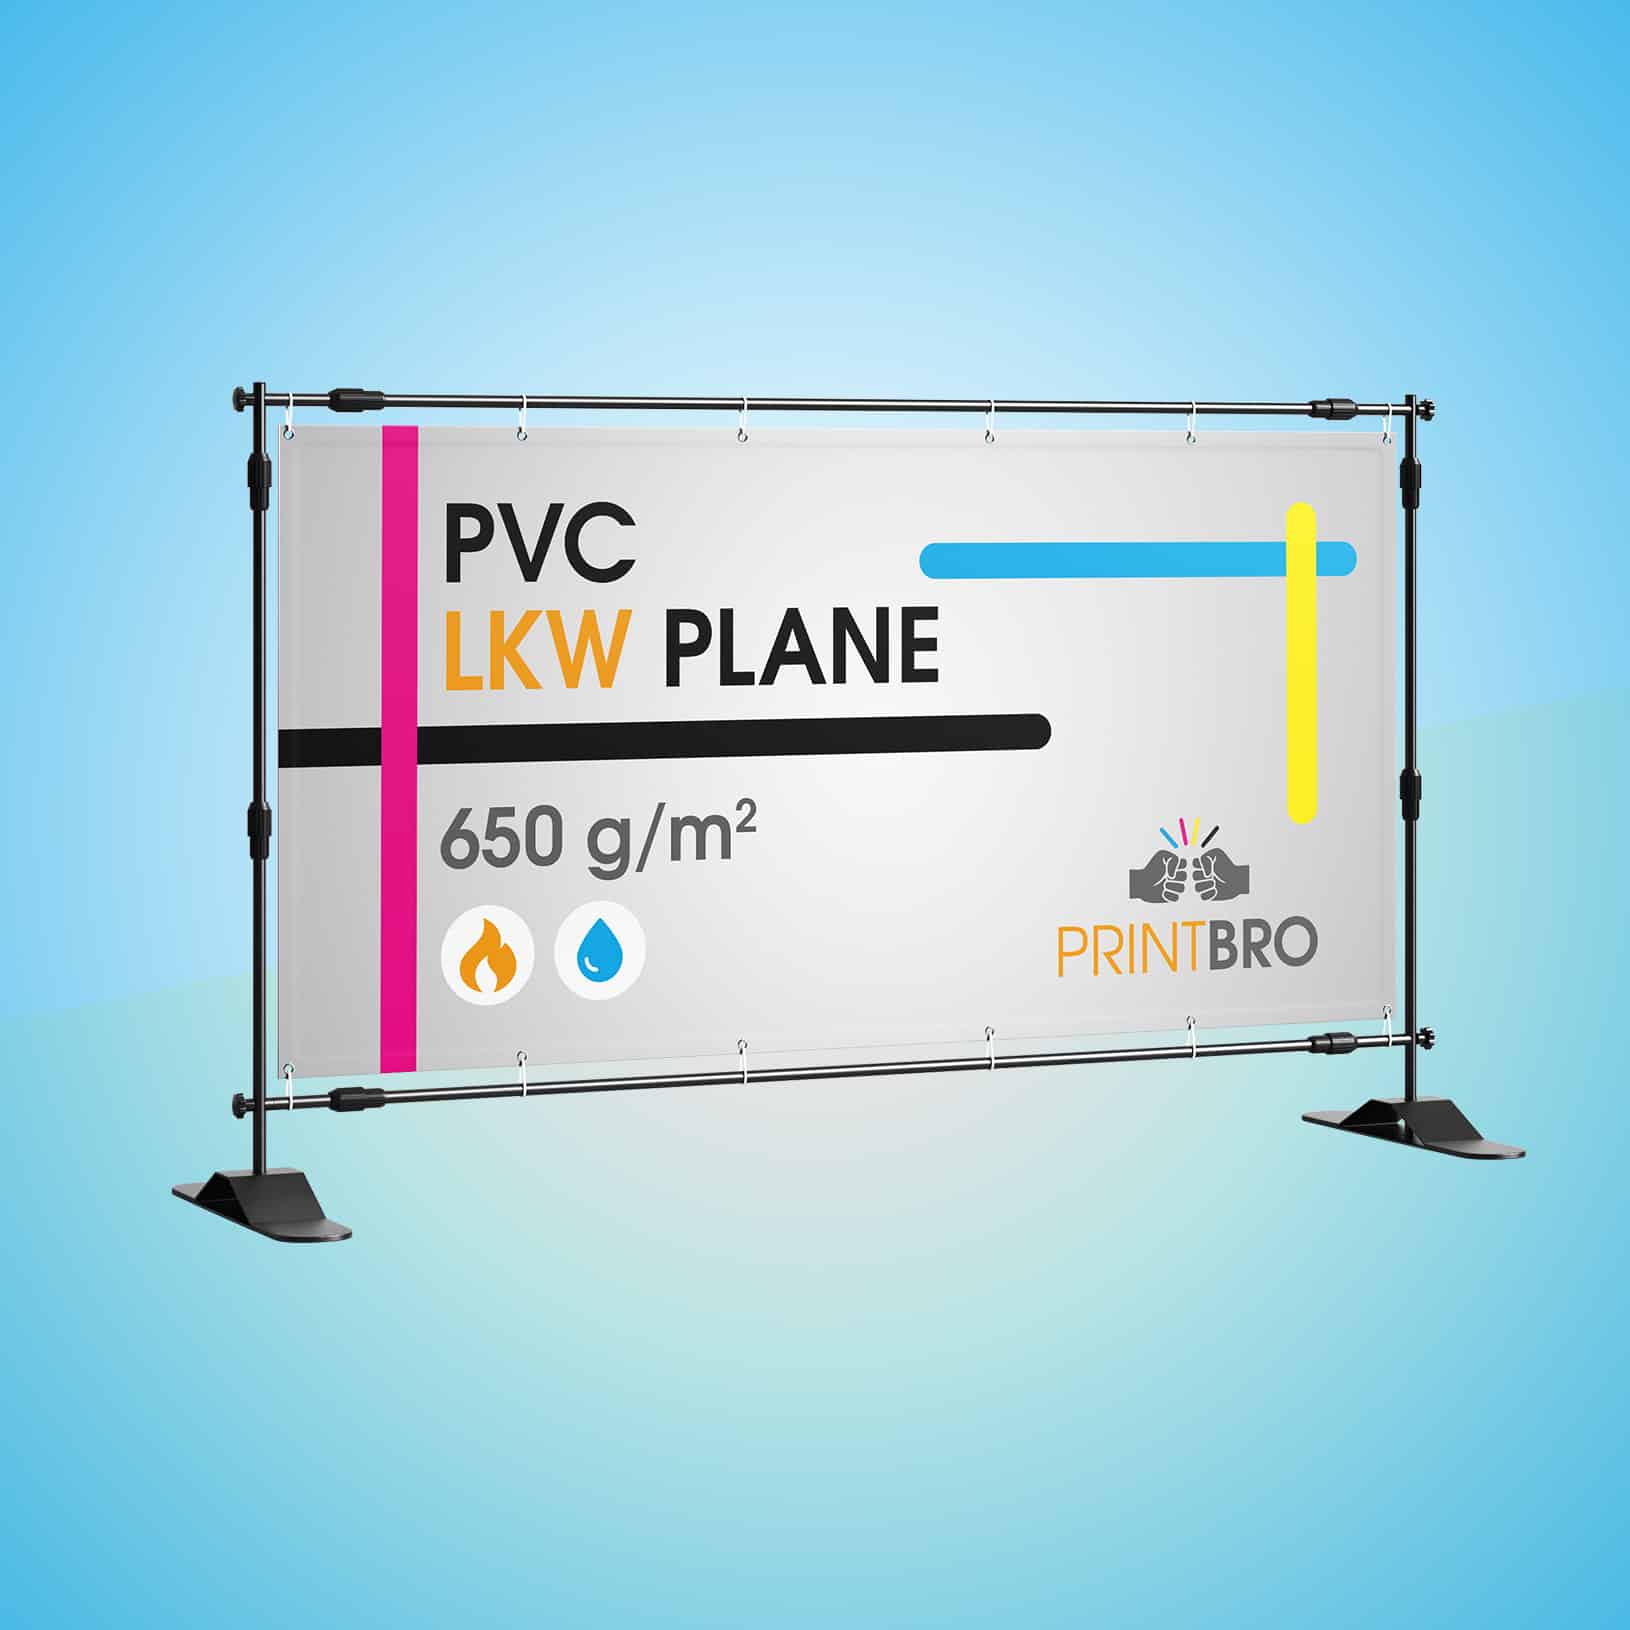 Wir kaufen Ihr Auto - X-Banner - PVC Planen Werbeplane